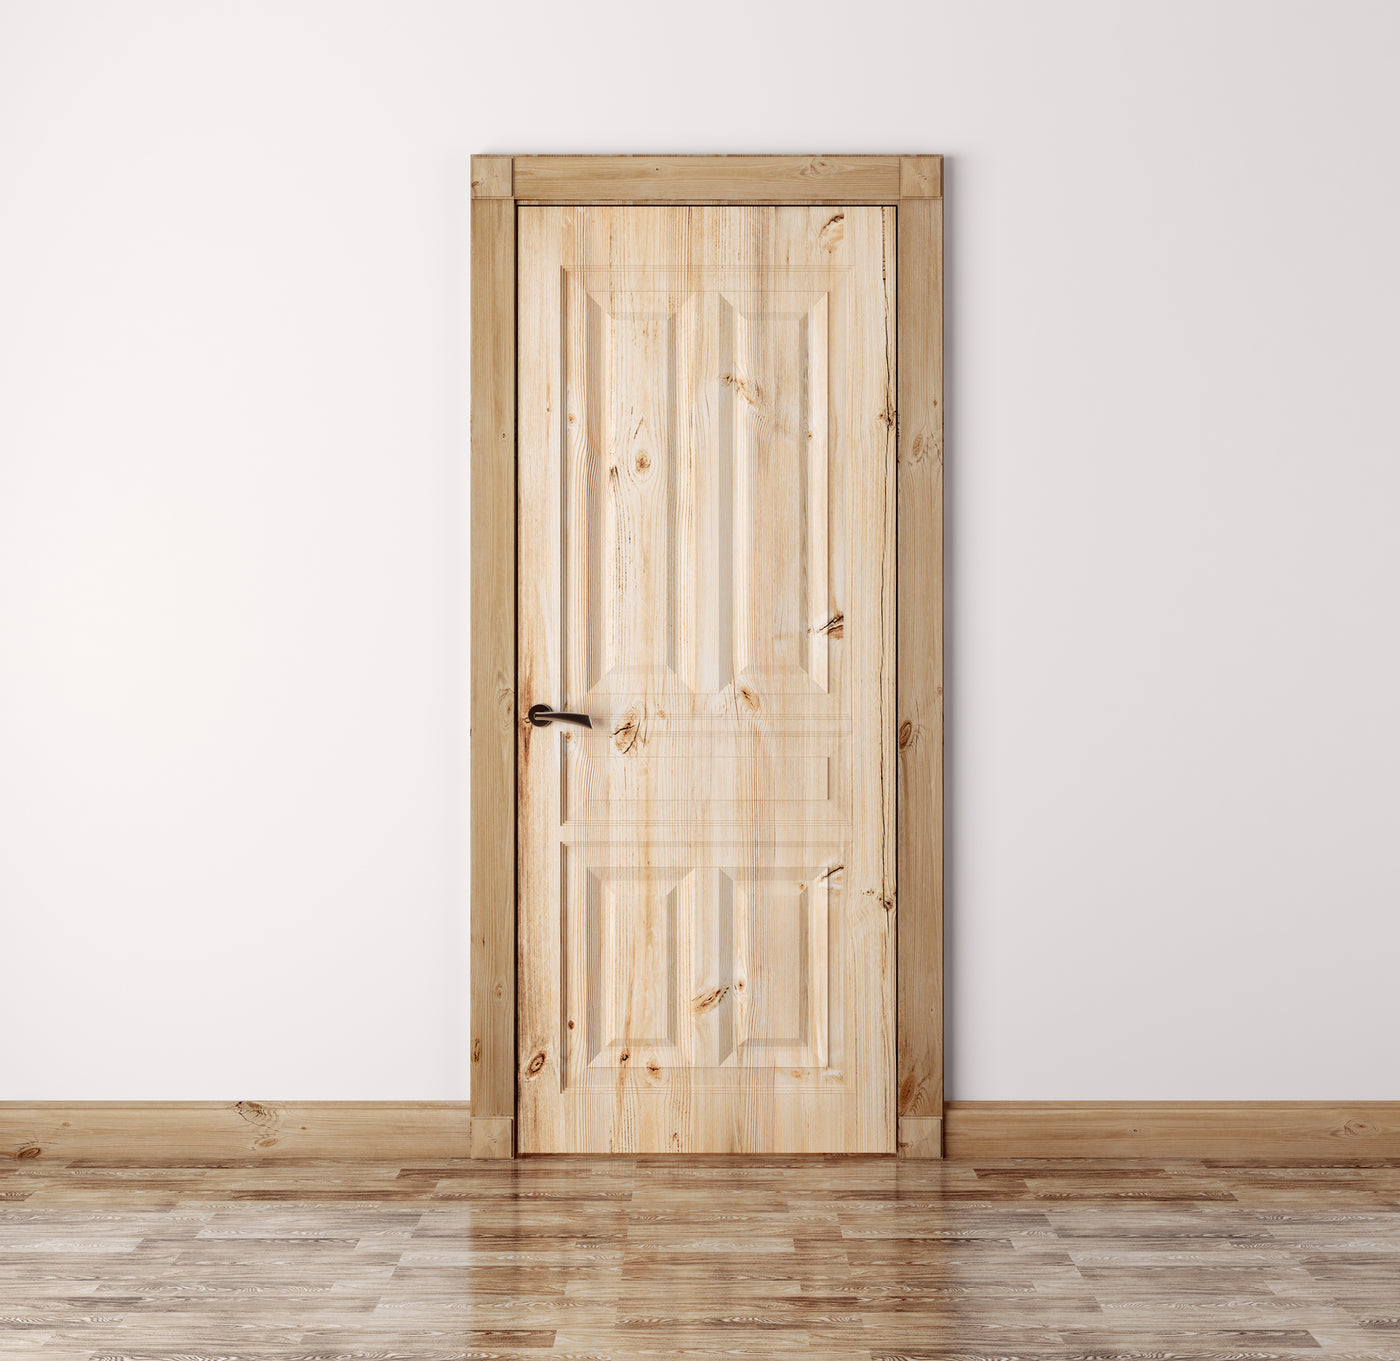 The benefits of solid pine doors over composite doors